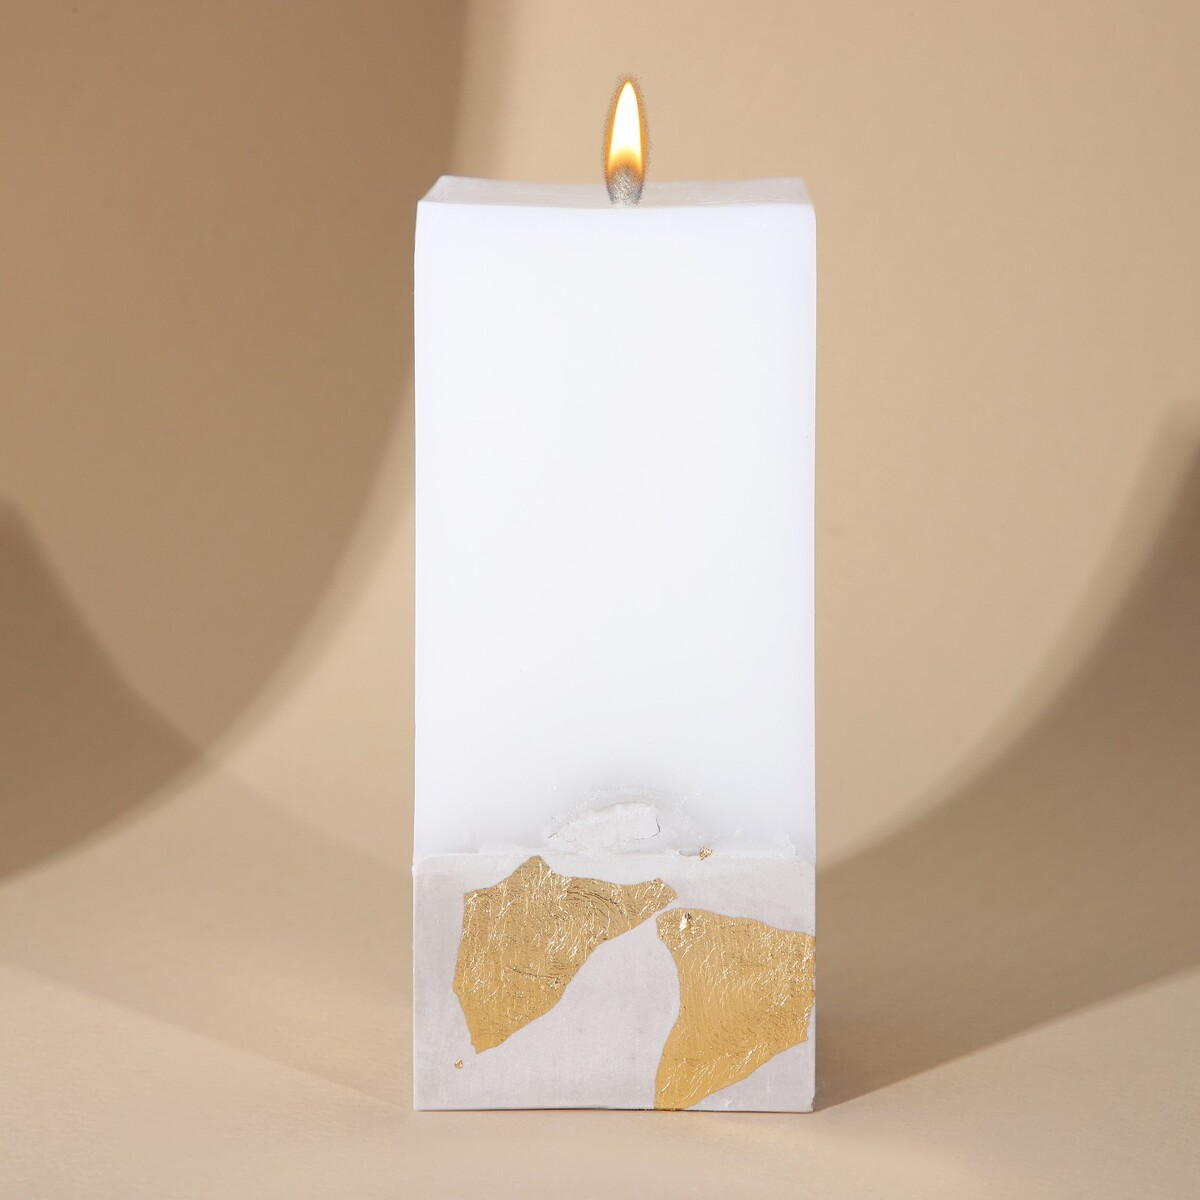 Свеча интерьерная белая с бетоном (поталь), 6 х 6 х 14 см свеча интерьерная женская фигура белая